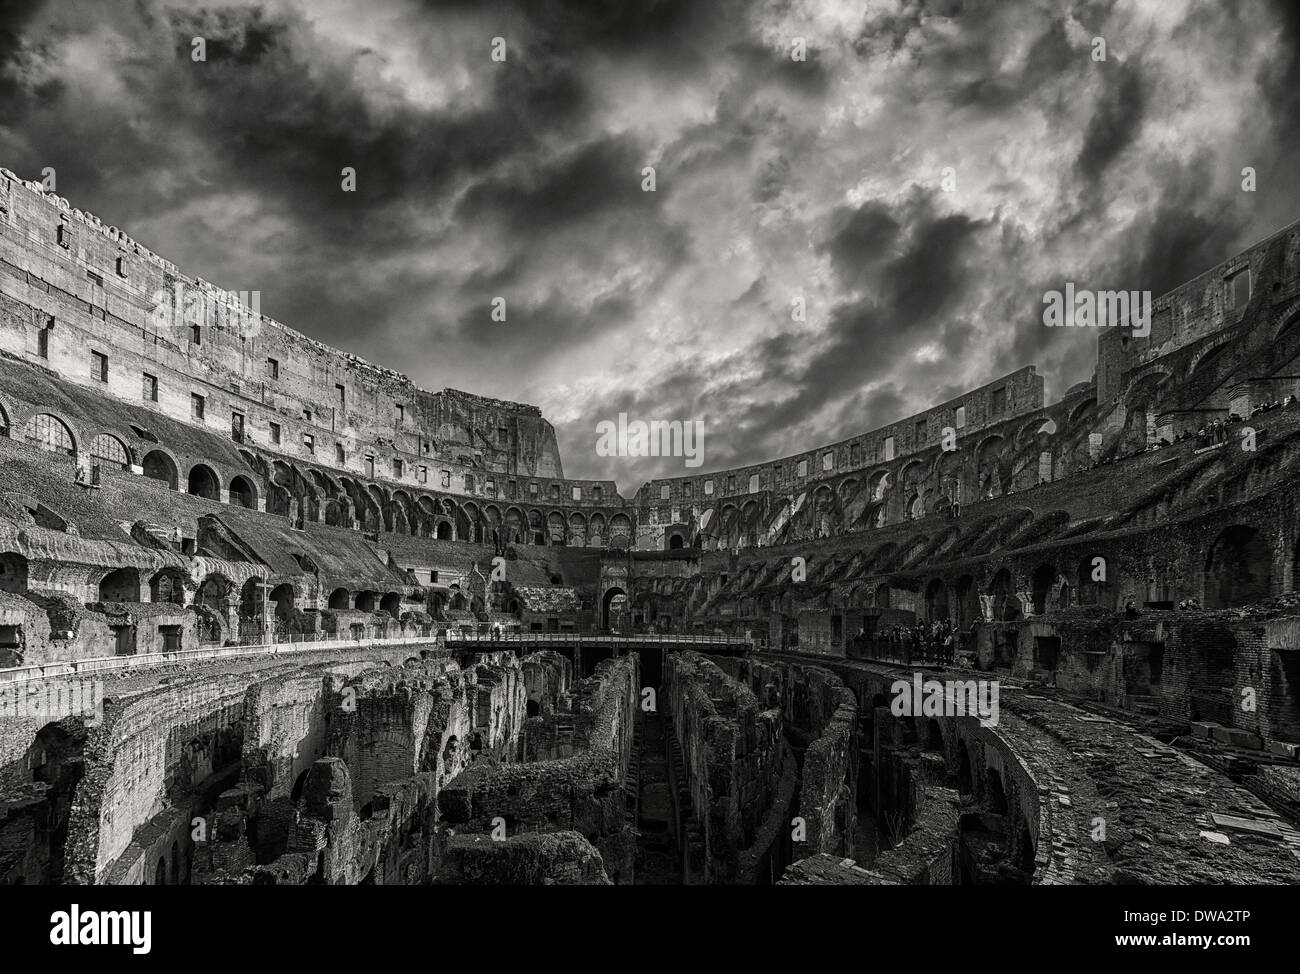 Una visualizzazione monocromatica dell imponente antica Colosseo romano situato nella capitale italiana di Roma. Foto Stock